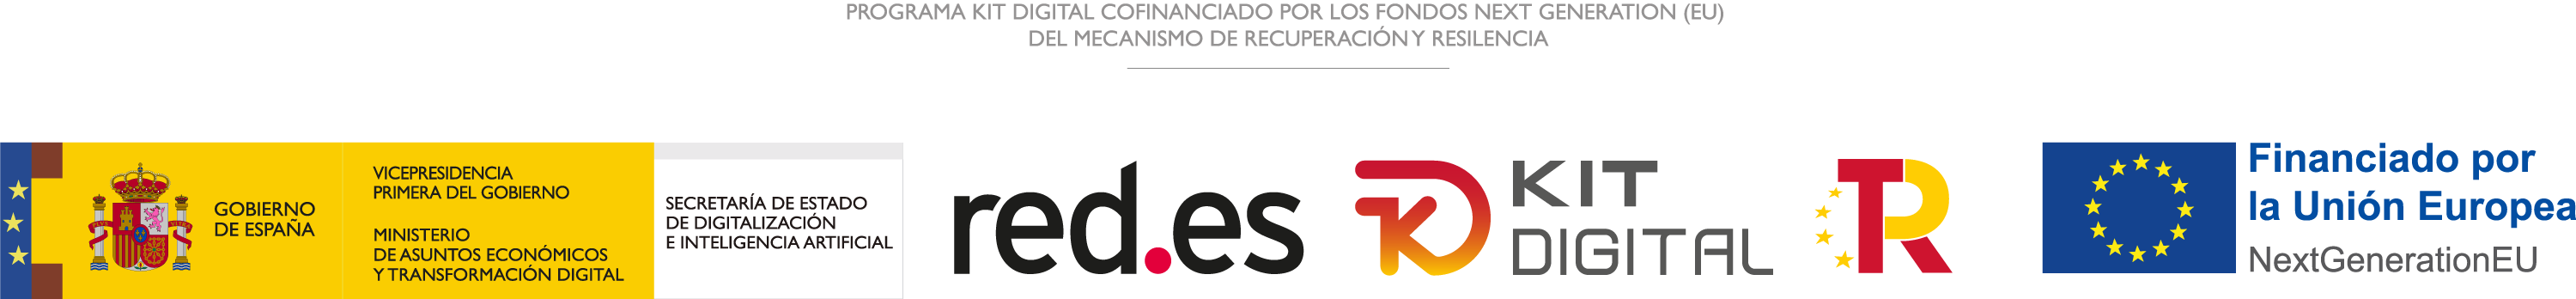 Programa Kit Digital cofinanciado por los Fondos Next Generation (EU) del Mecanismo de Recuperación y Resiliencia